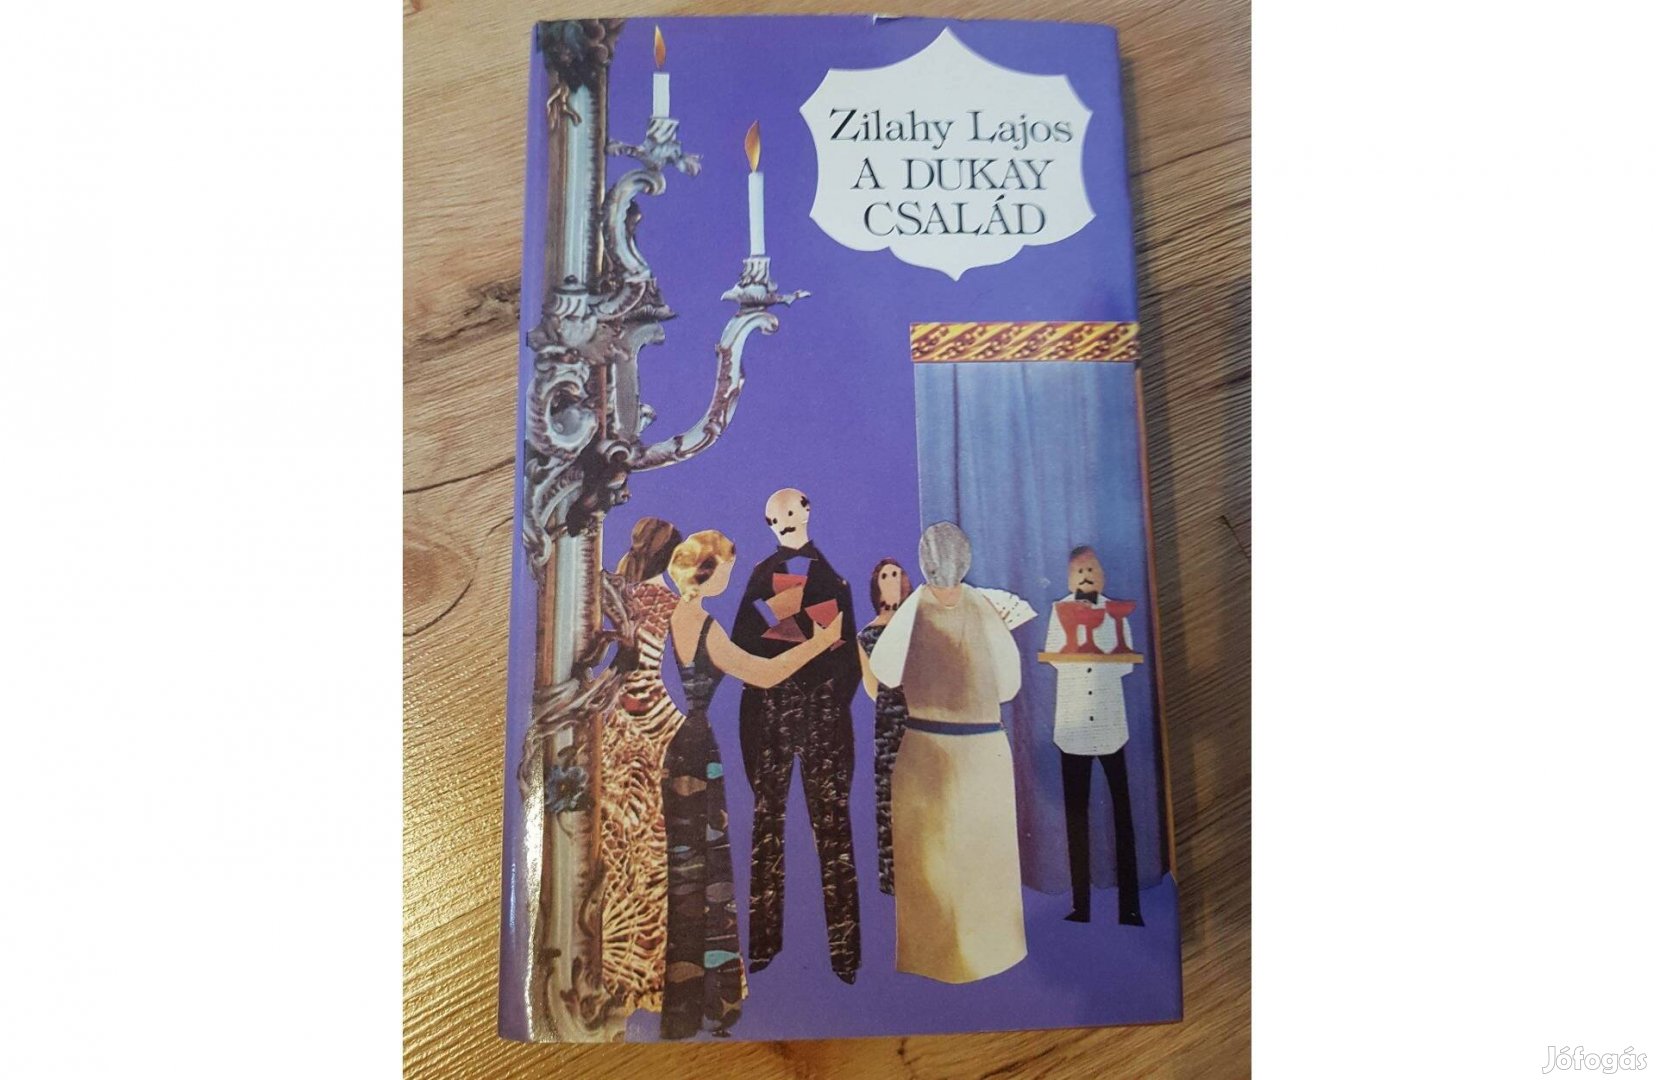 Zilahy Lajos - A Dukay Család 2-3. kötet